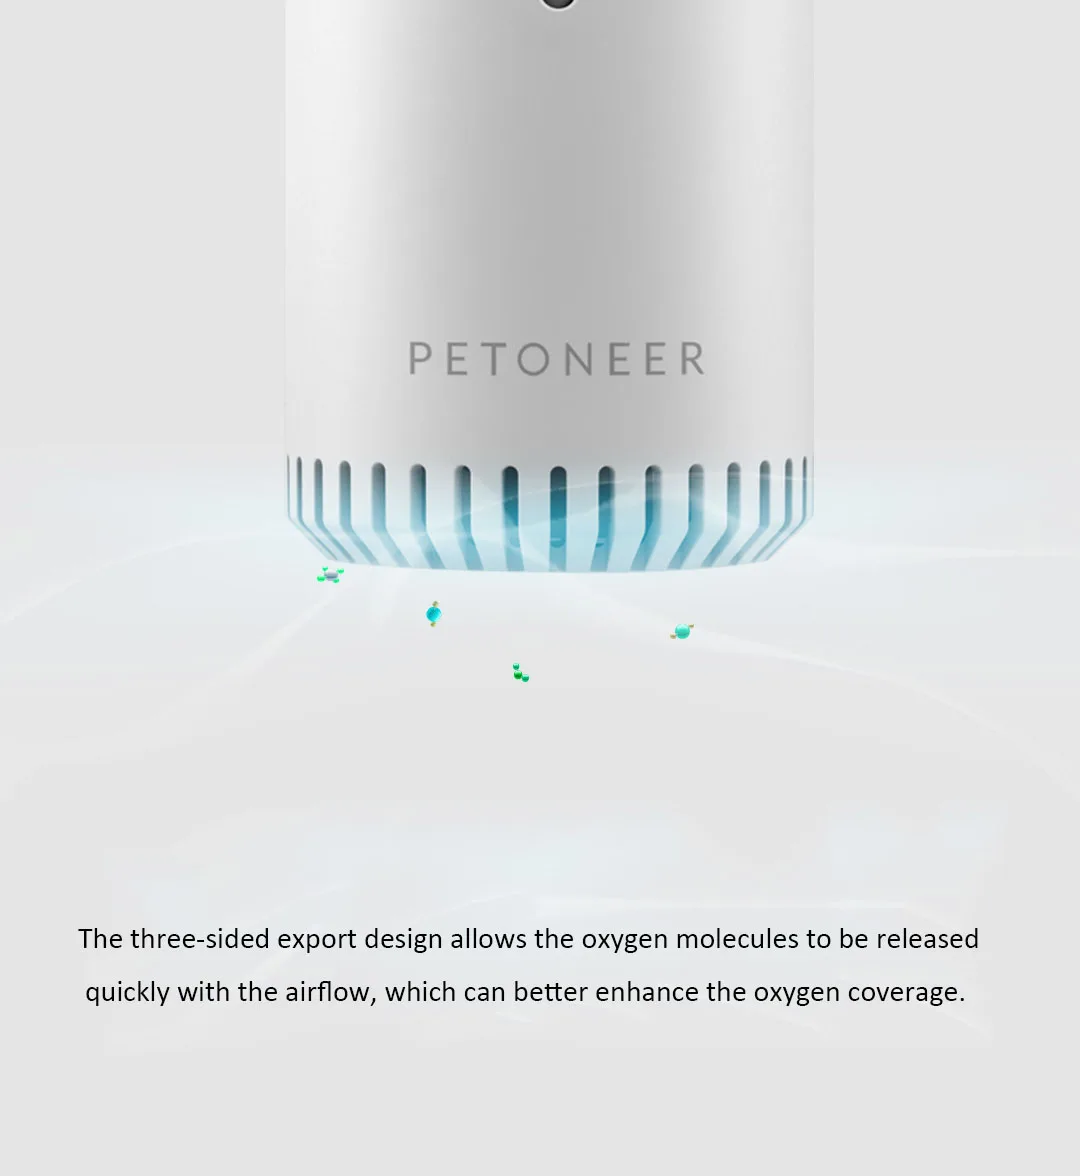 Xiaomi Mijia Интеллектуальный дезодорант для стерилизации инфракрасная функция синхронизации очиститель воздуха USB кабель для зарядки домашних животных Туалет свежий воздух